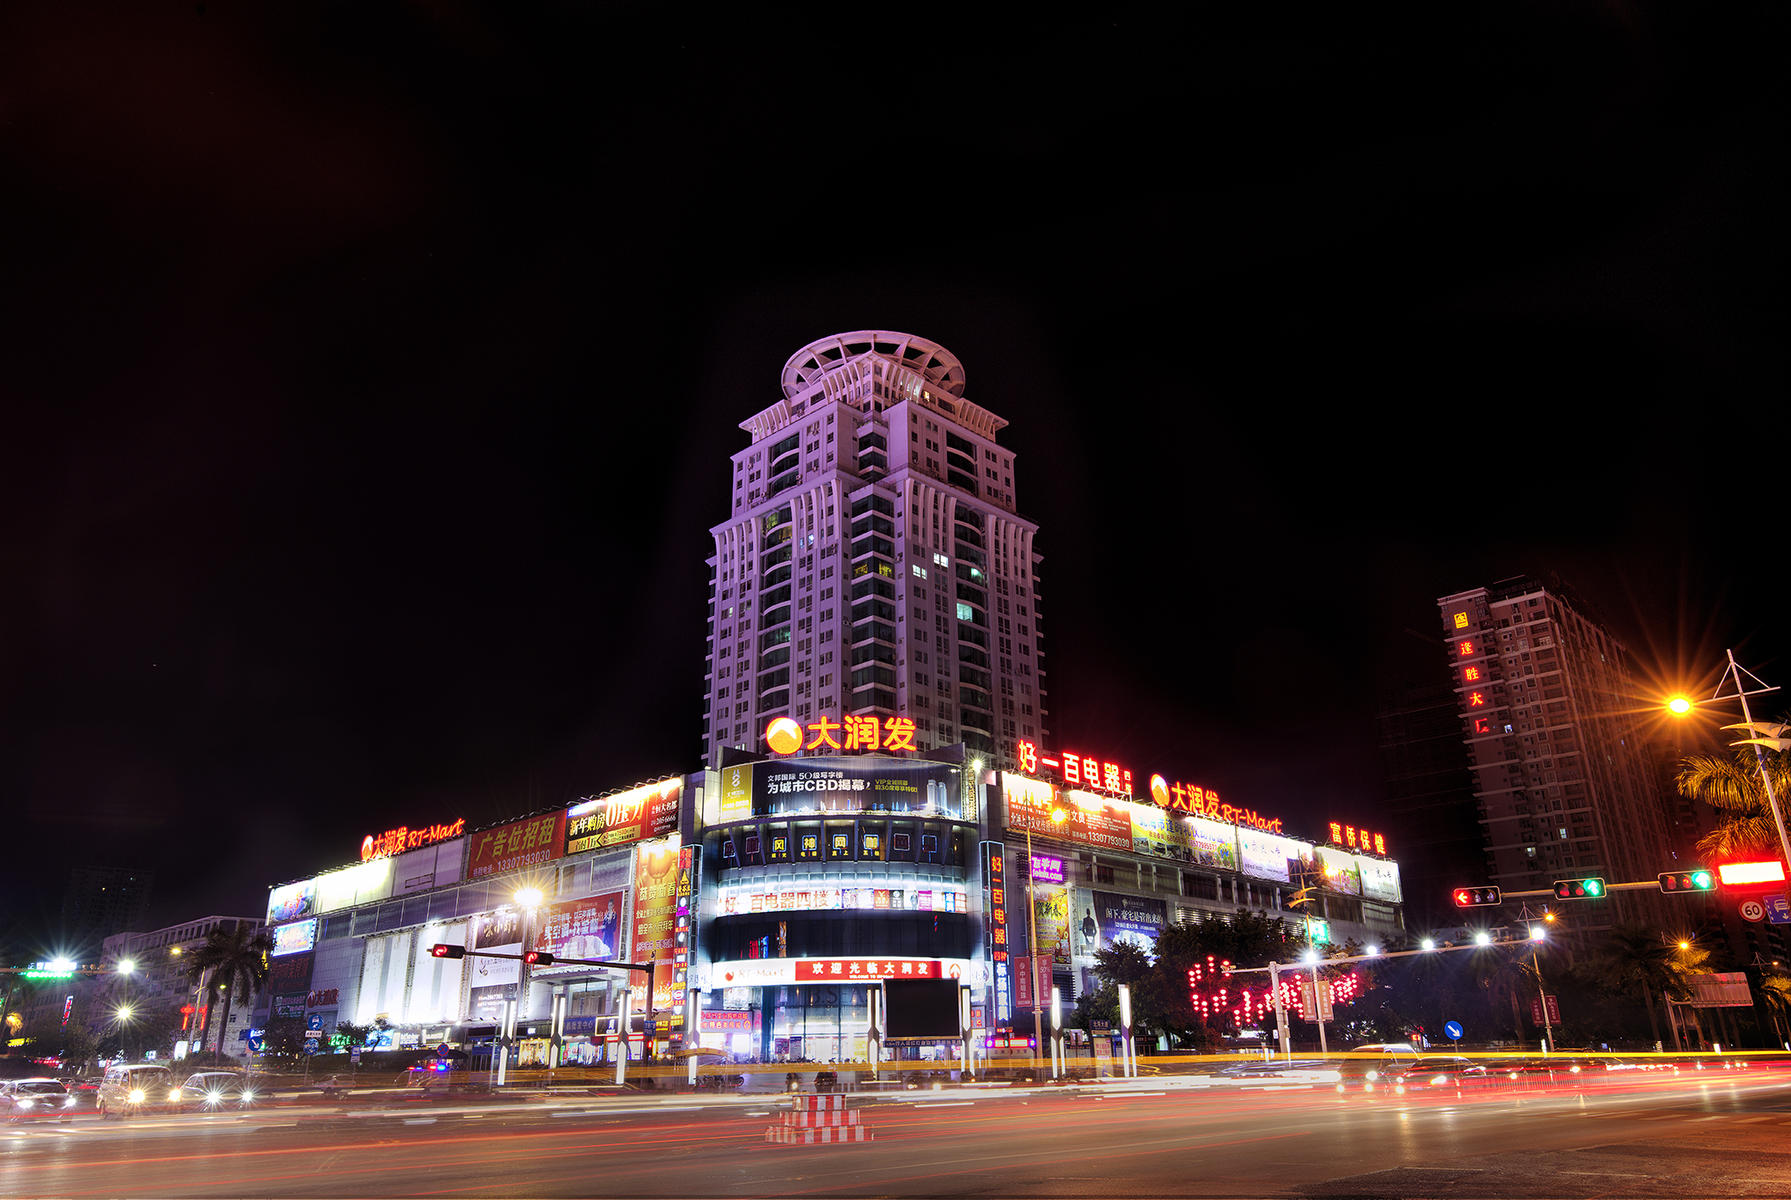 北海大道与北京路交汇处城市购物广场4楼 也就是旧大润发4楼 总建筑